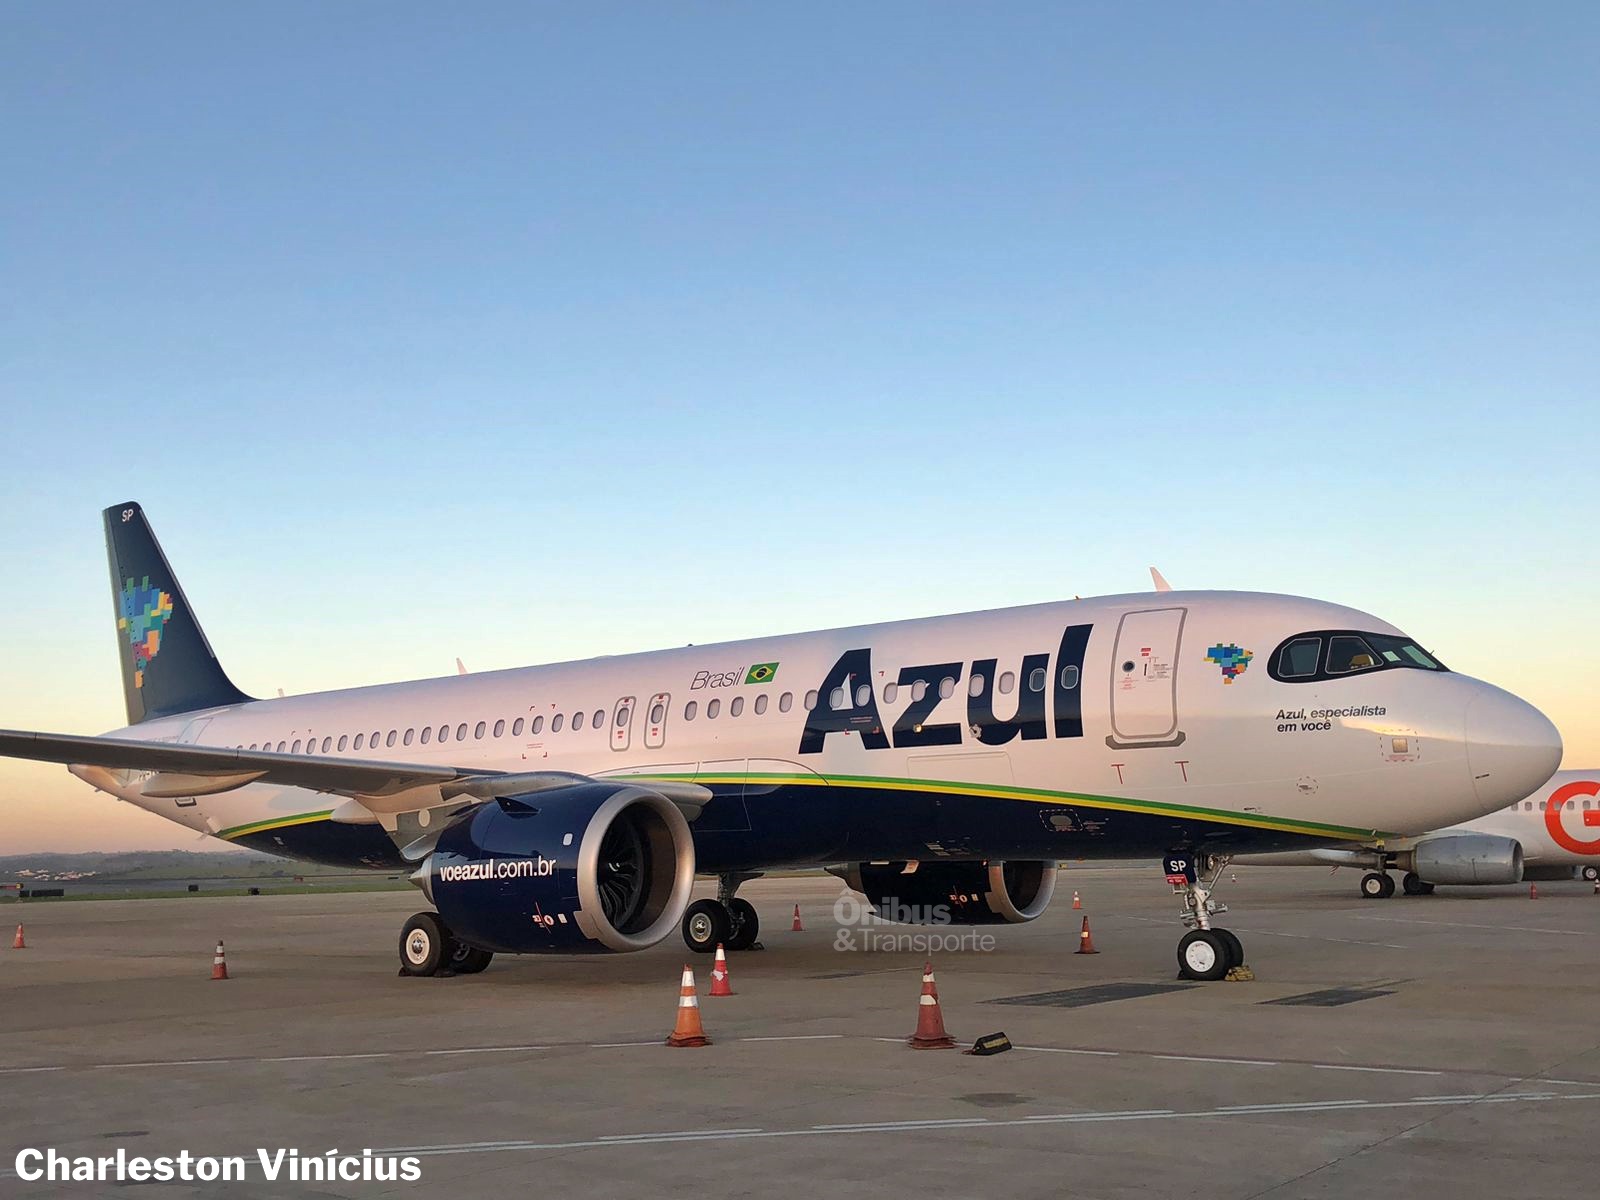 Azul recebeu duas novas aeronaves neste fim de semana - Ônibus & Transporte